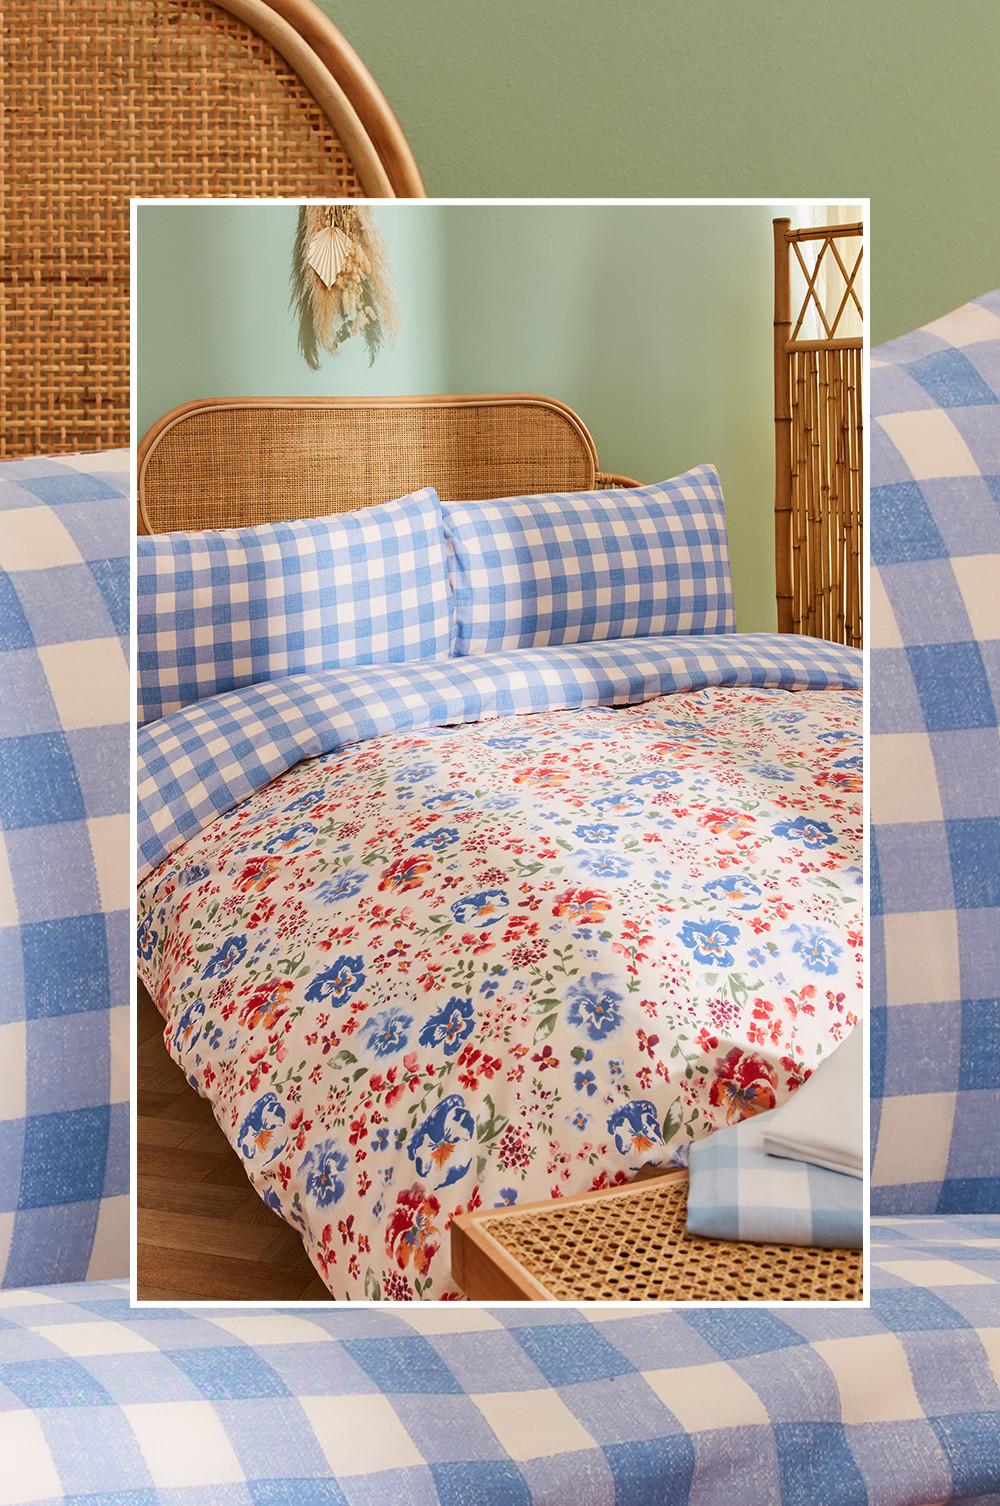 Decoración de dormitorio con ropa de cama de cuadros vichy azules y blancos